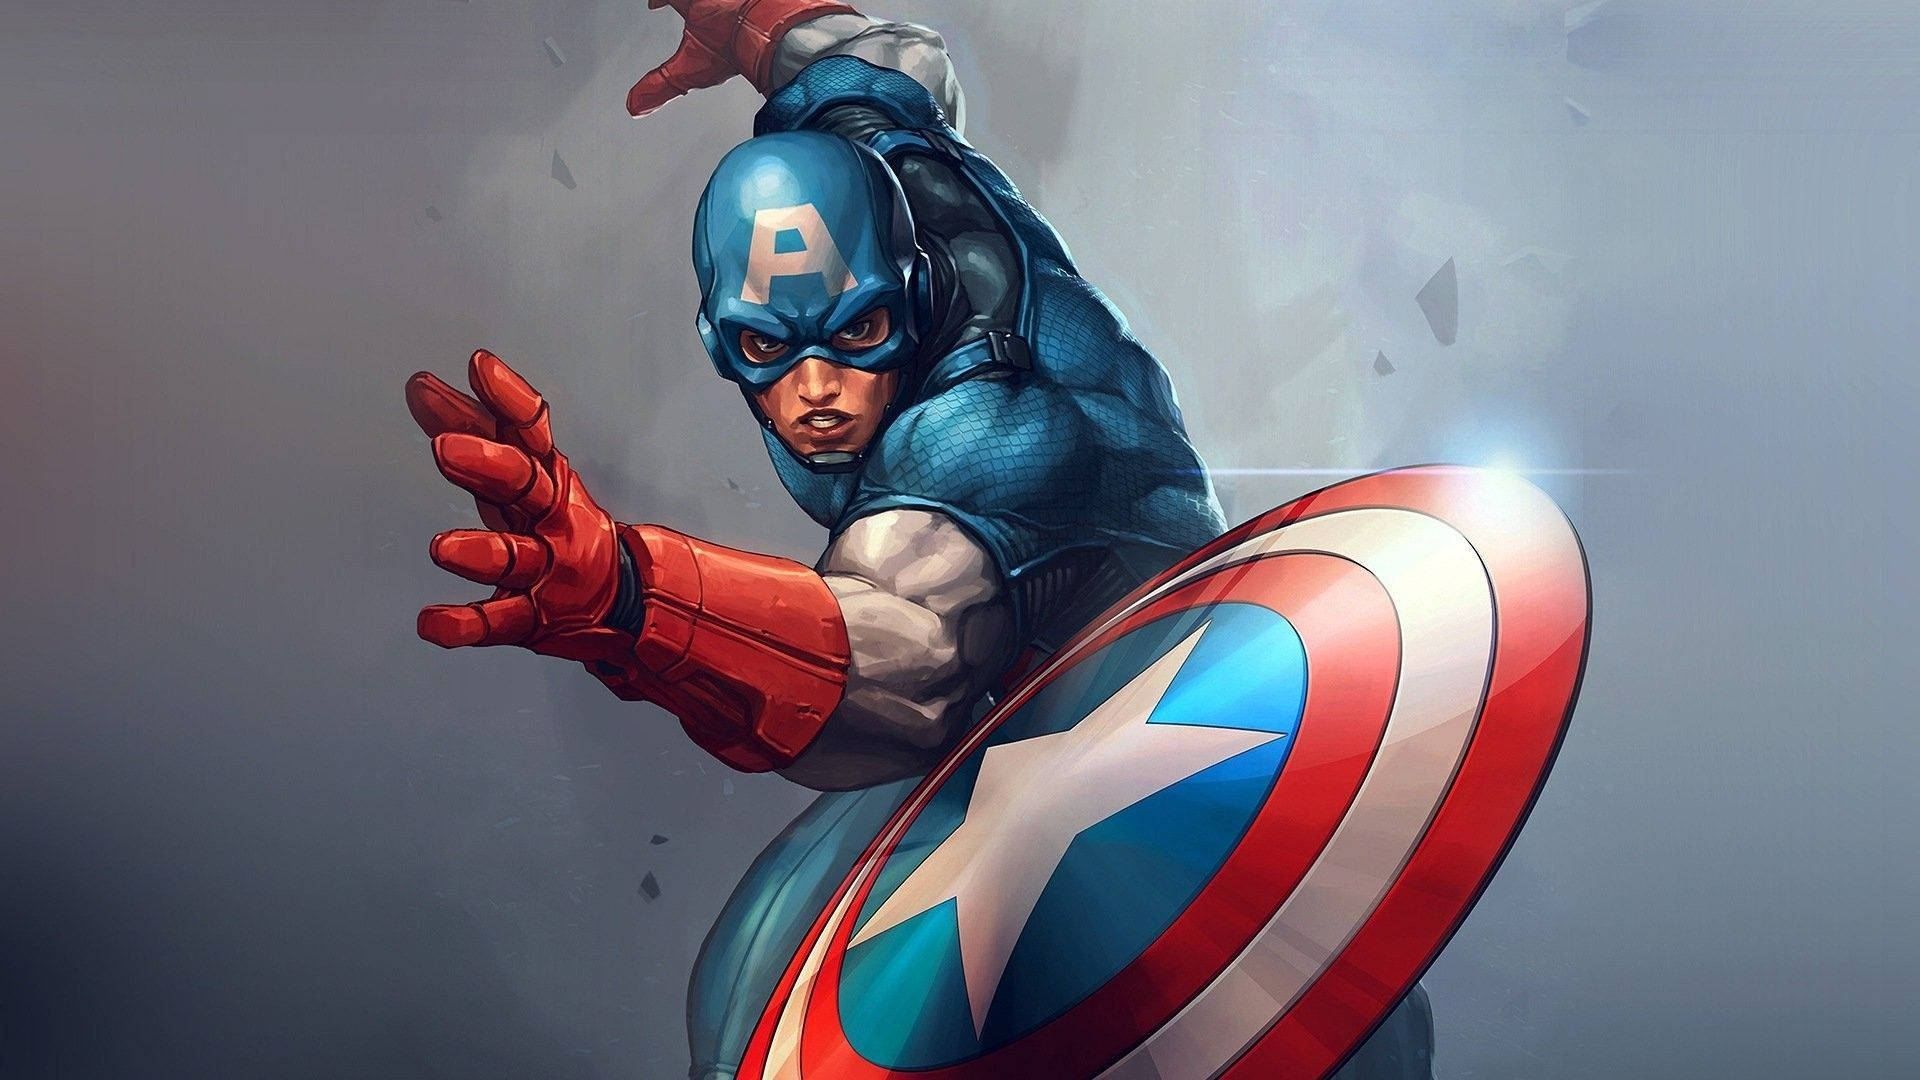 Download Captain America Superhero Comic-style Artwork Wallpaper |  